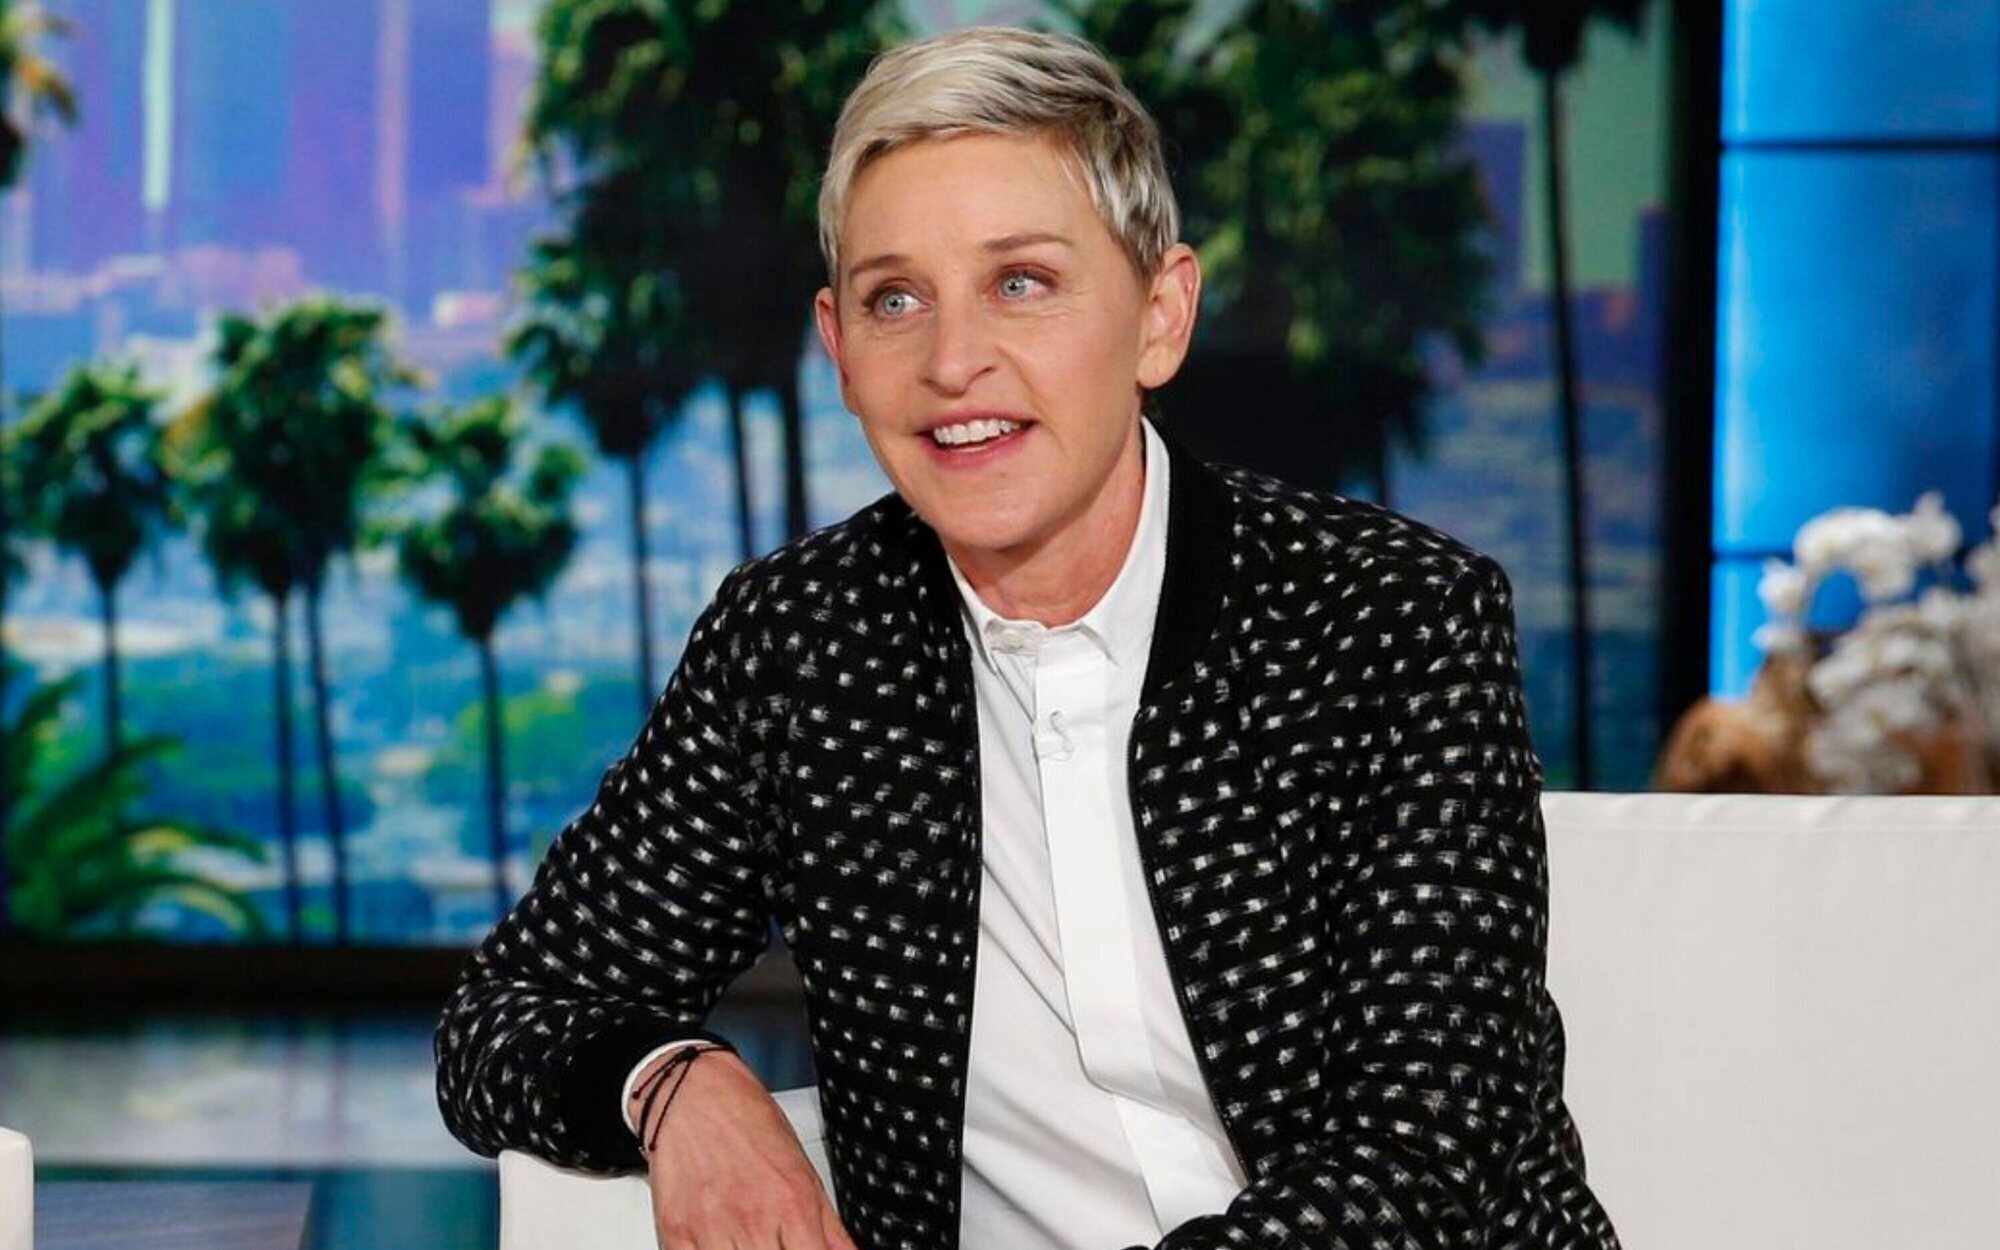 Ellen DeGeneres dice adiós a su programa tras 19 años, con la presencia de Michelle Obama el 26 de mayo